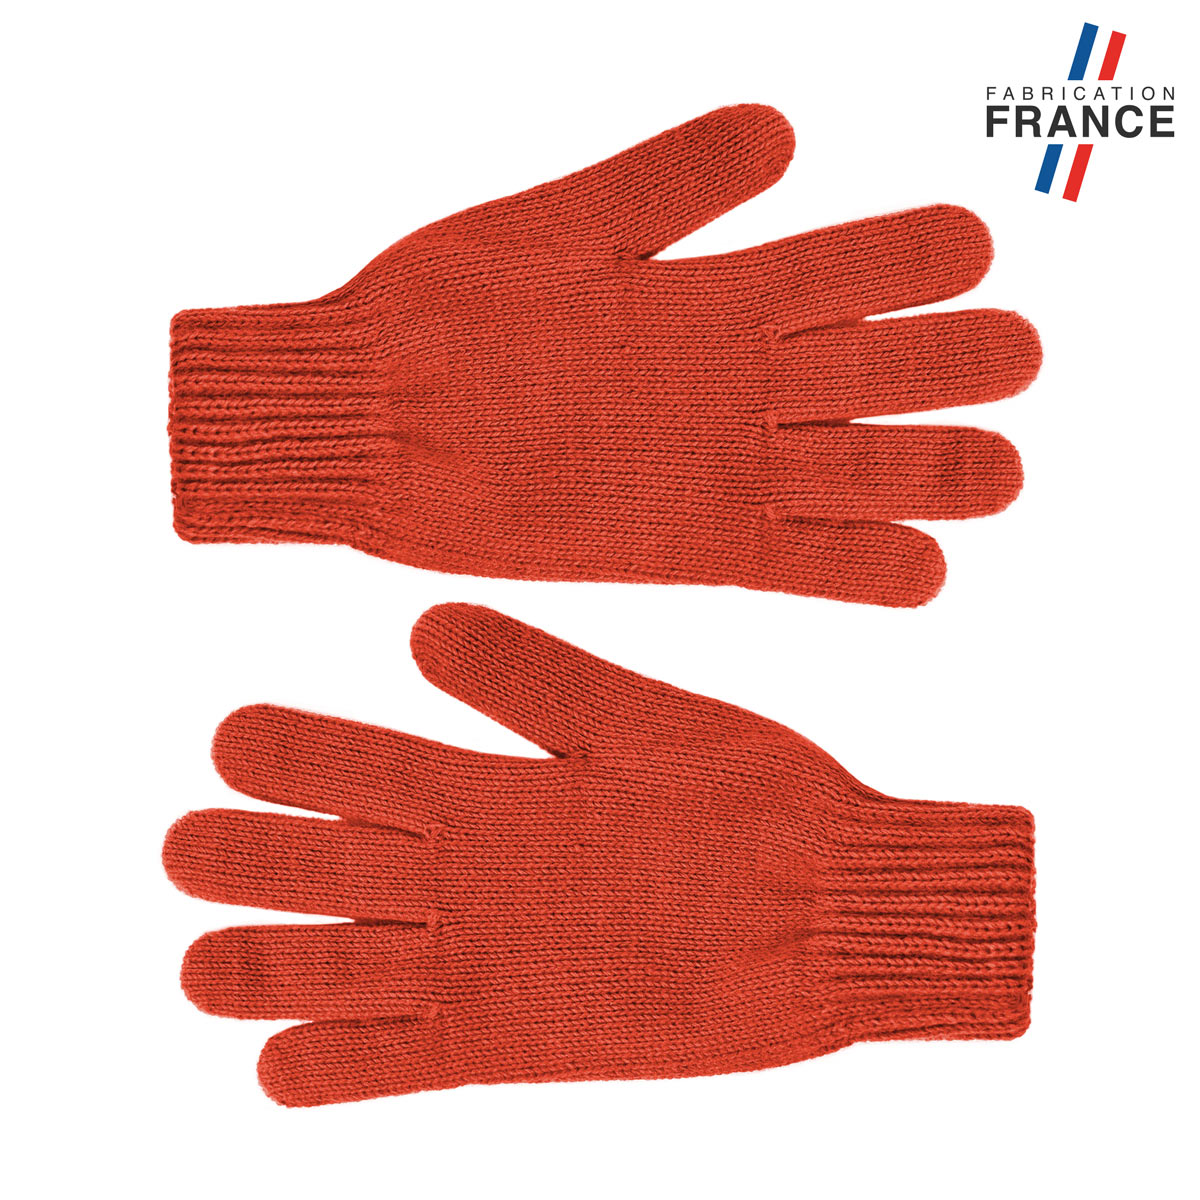 GA-00058_A12-1FR_Paire-gants_femme-orange-fabrique-en-France